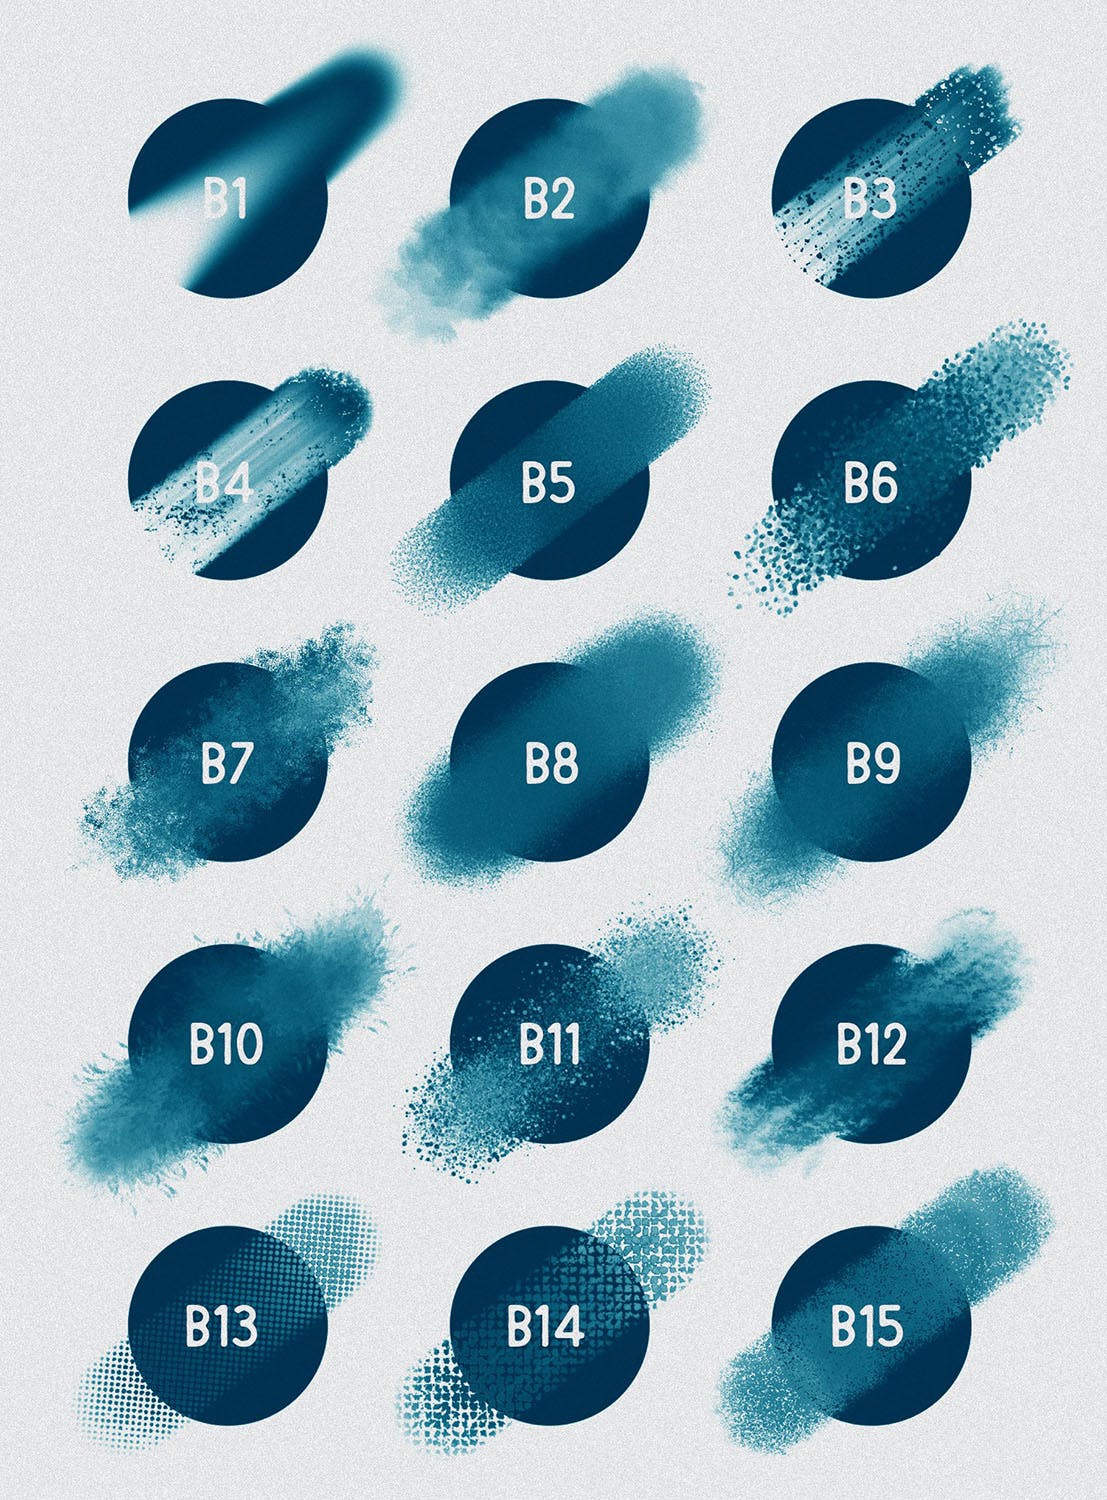 30种不同样式的Procreate专用混合笔刷16设计素材网精选 Procreate: Blender Brushes插图(2)